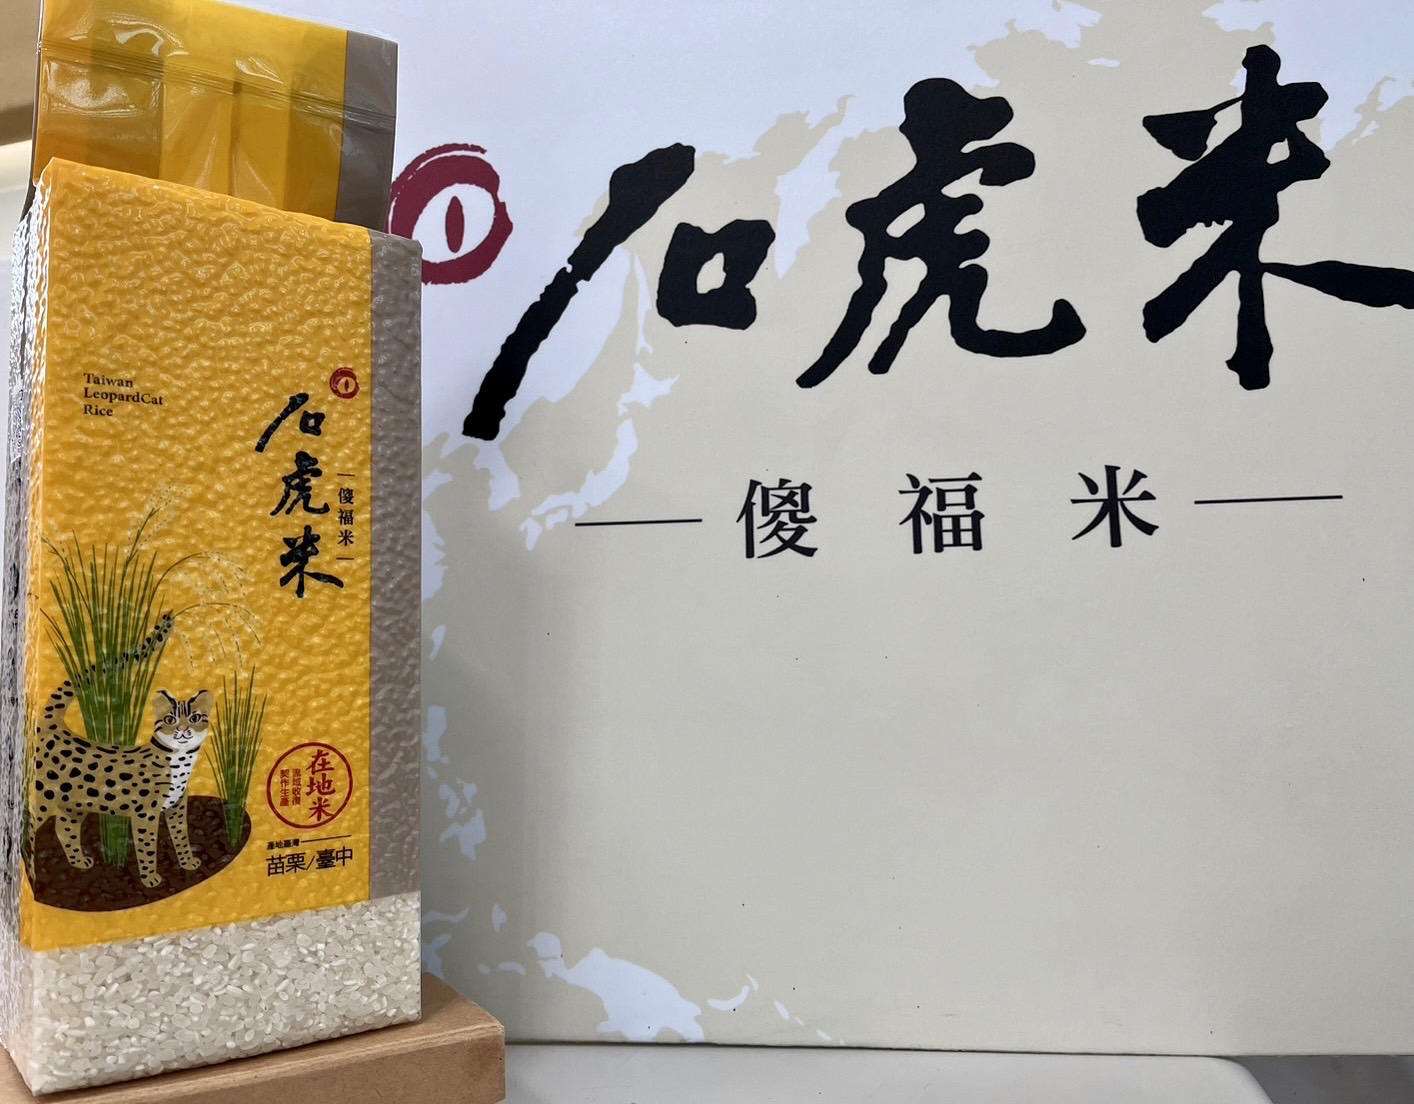 臺灣藍鵲茶 石虎米-白米1.2Kg*4包組